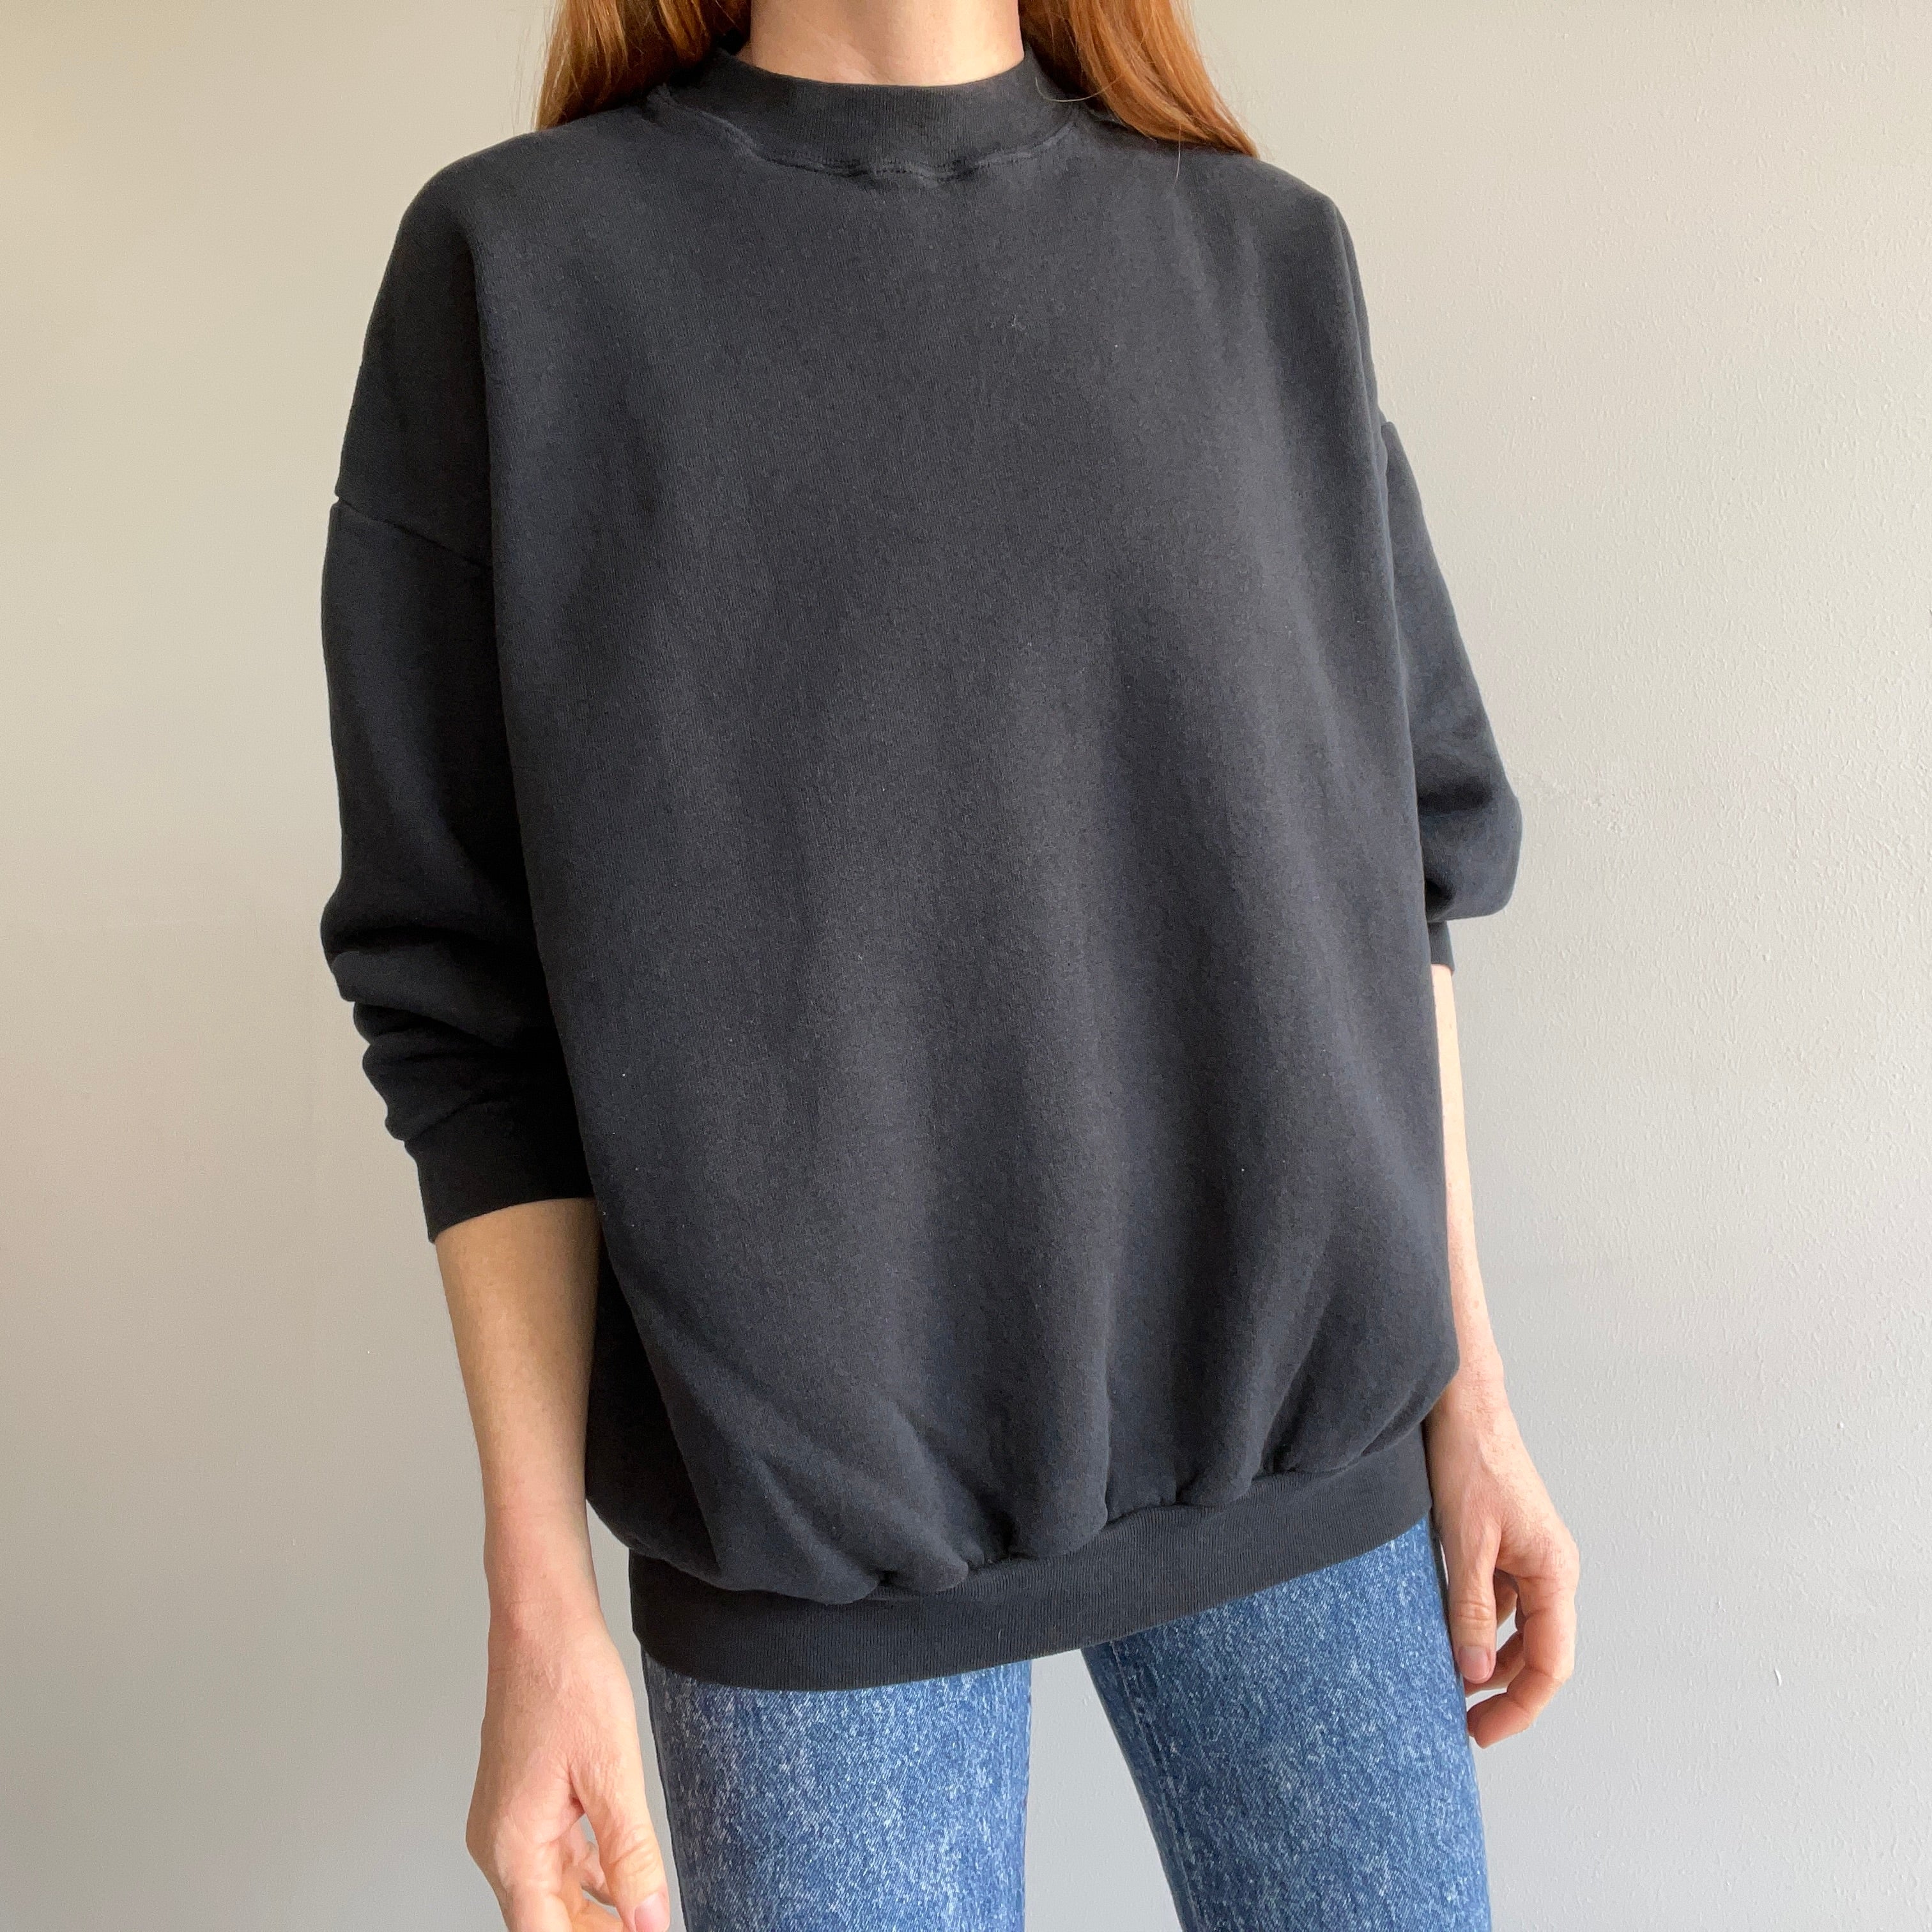 1990s Oversized Blank Faded Black Sweatshirt by Tultex